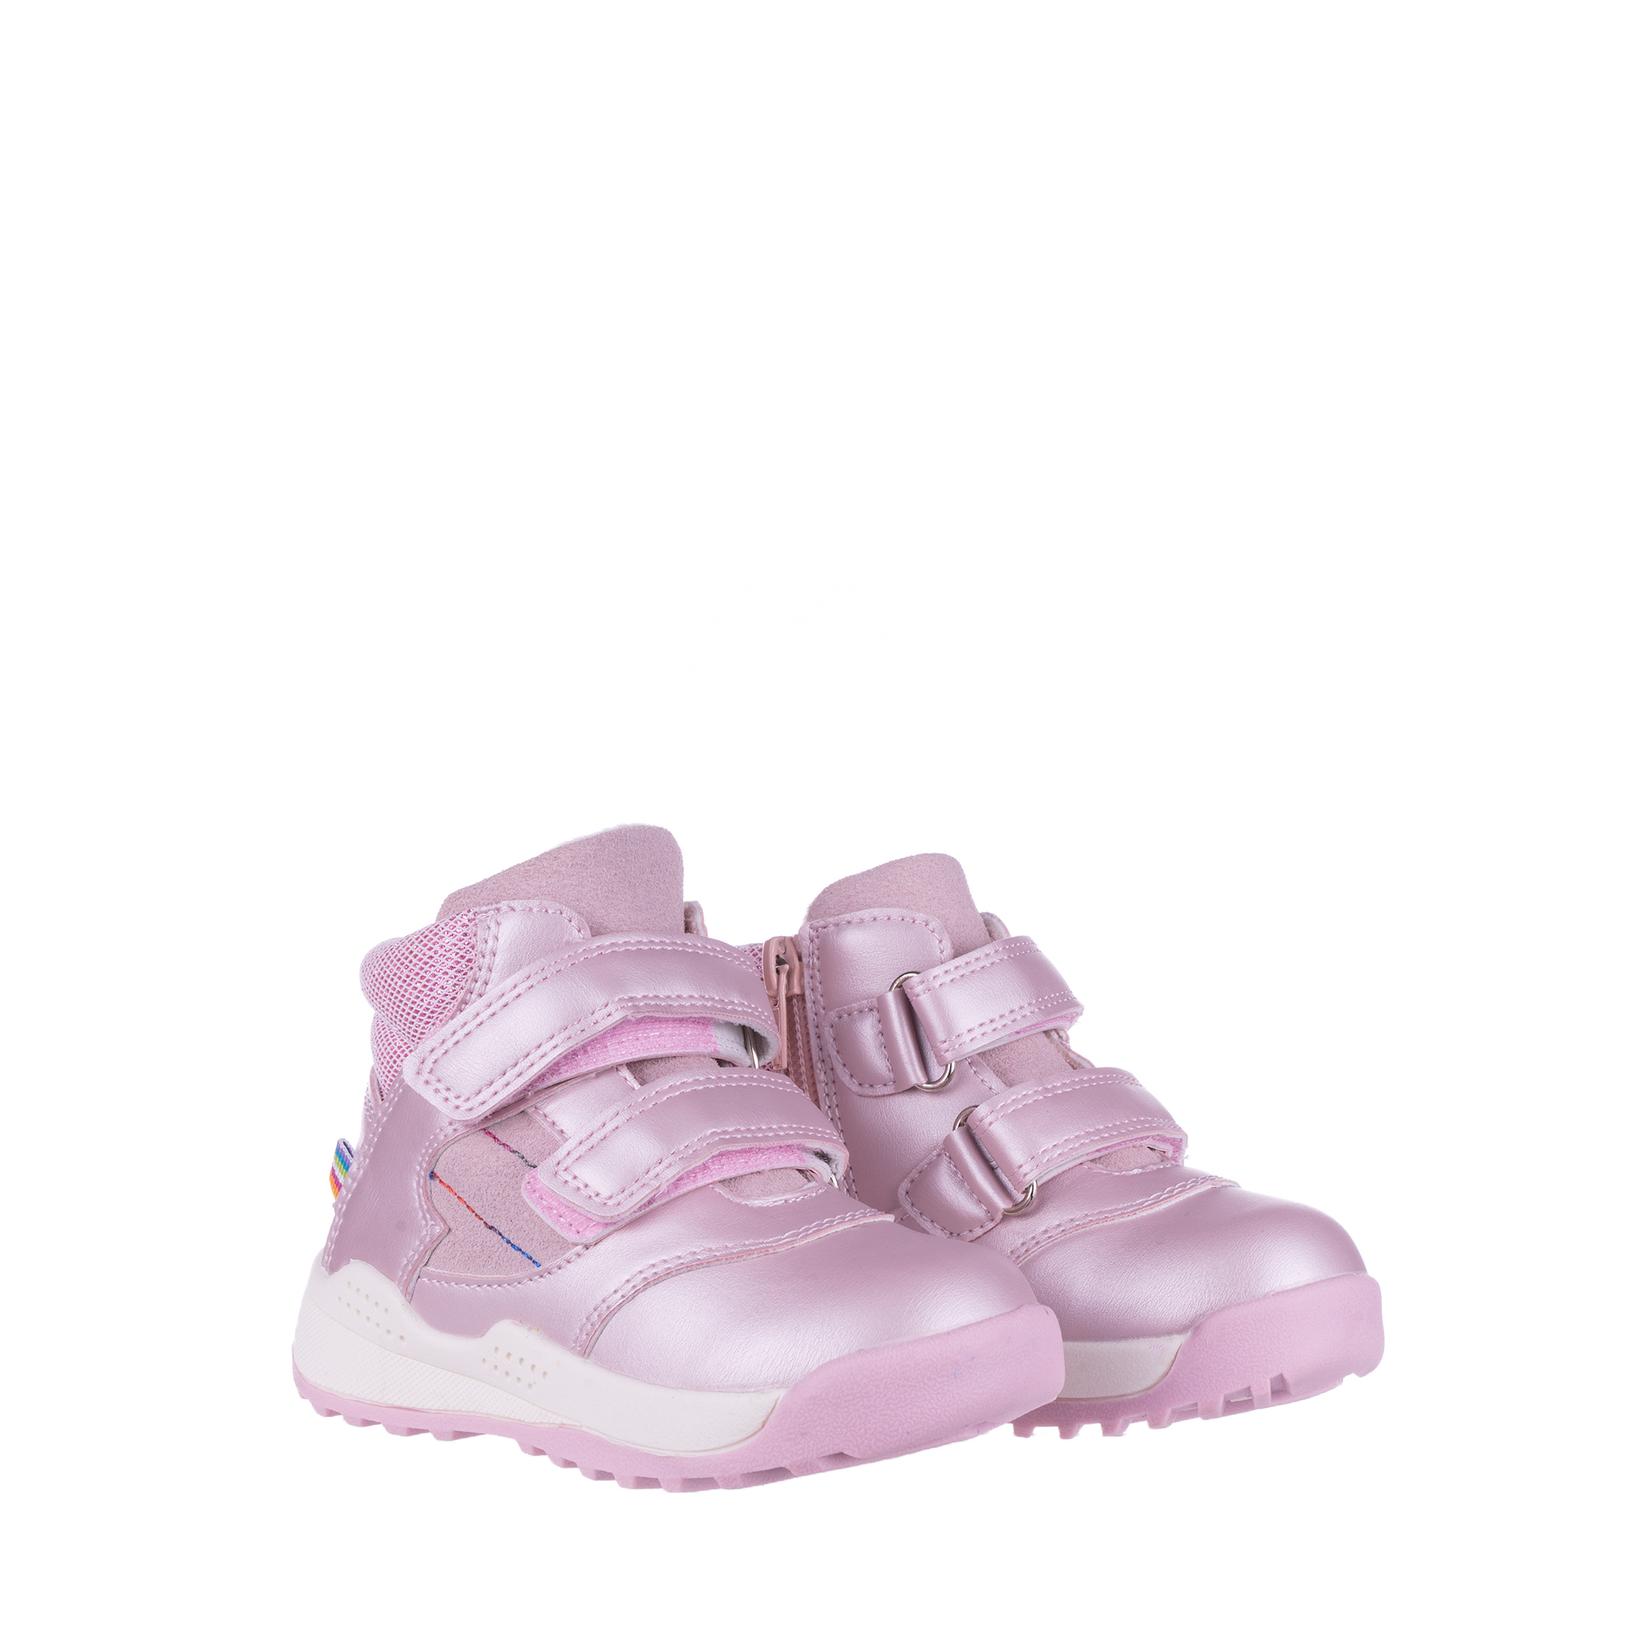 Selected image for PANDINO GIRL Cipele za devojčice N75315, Roze